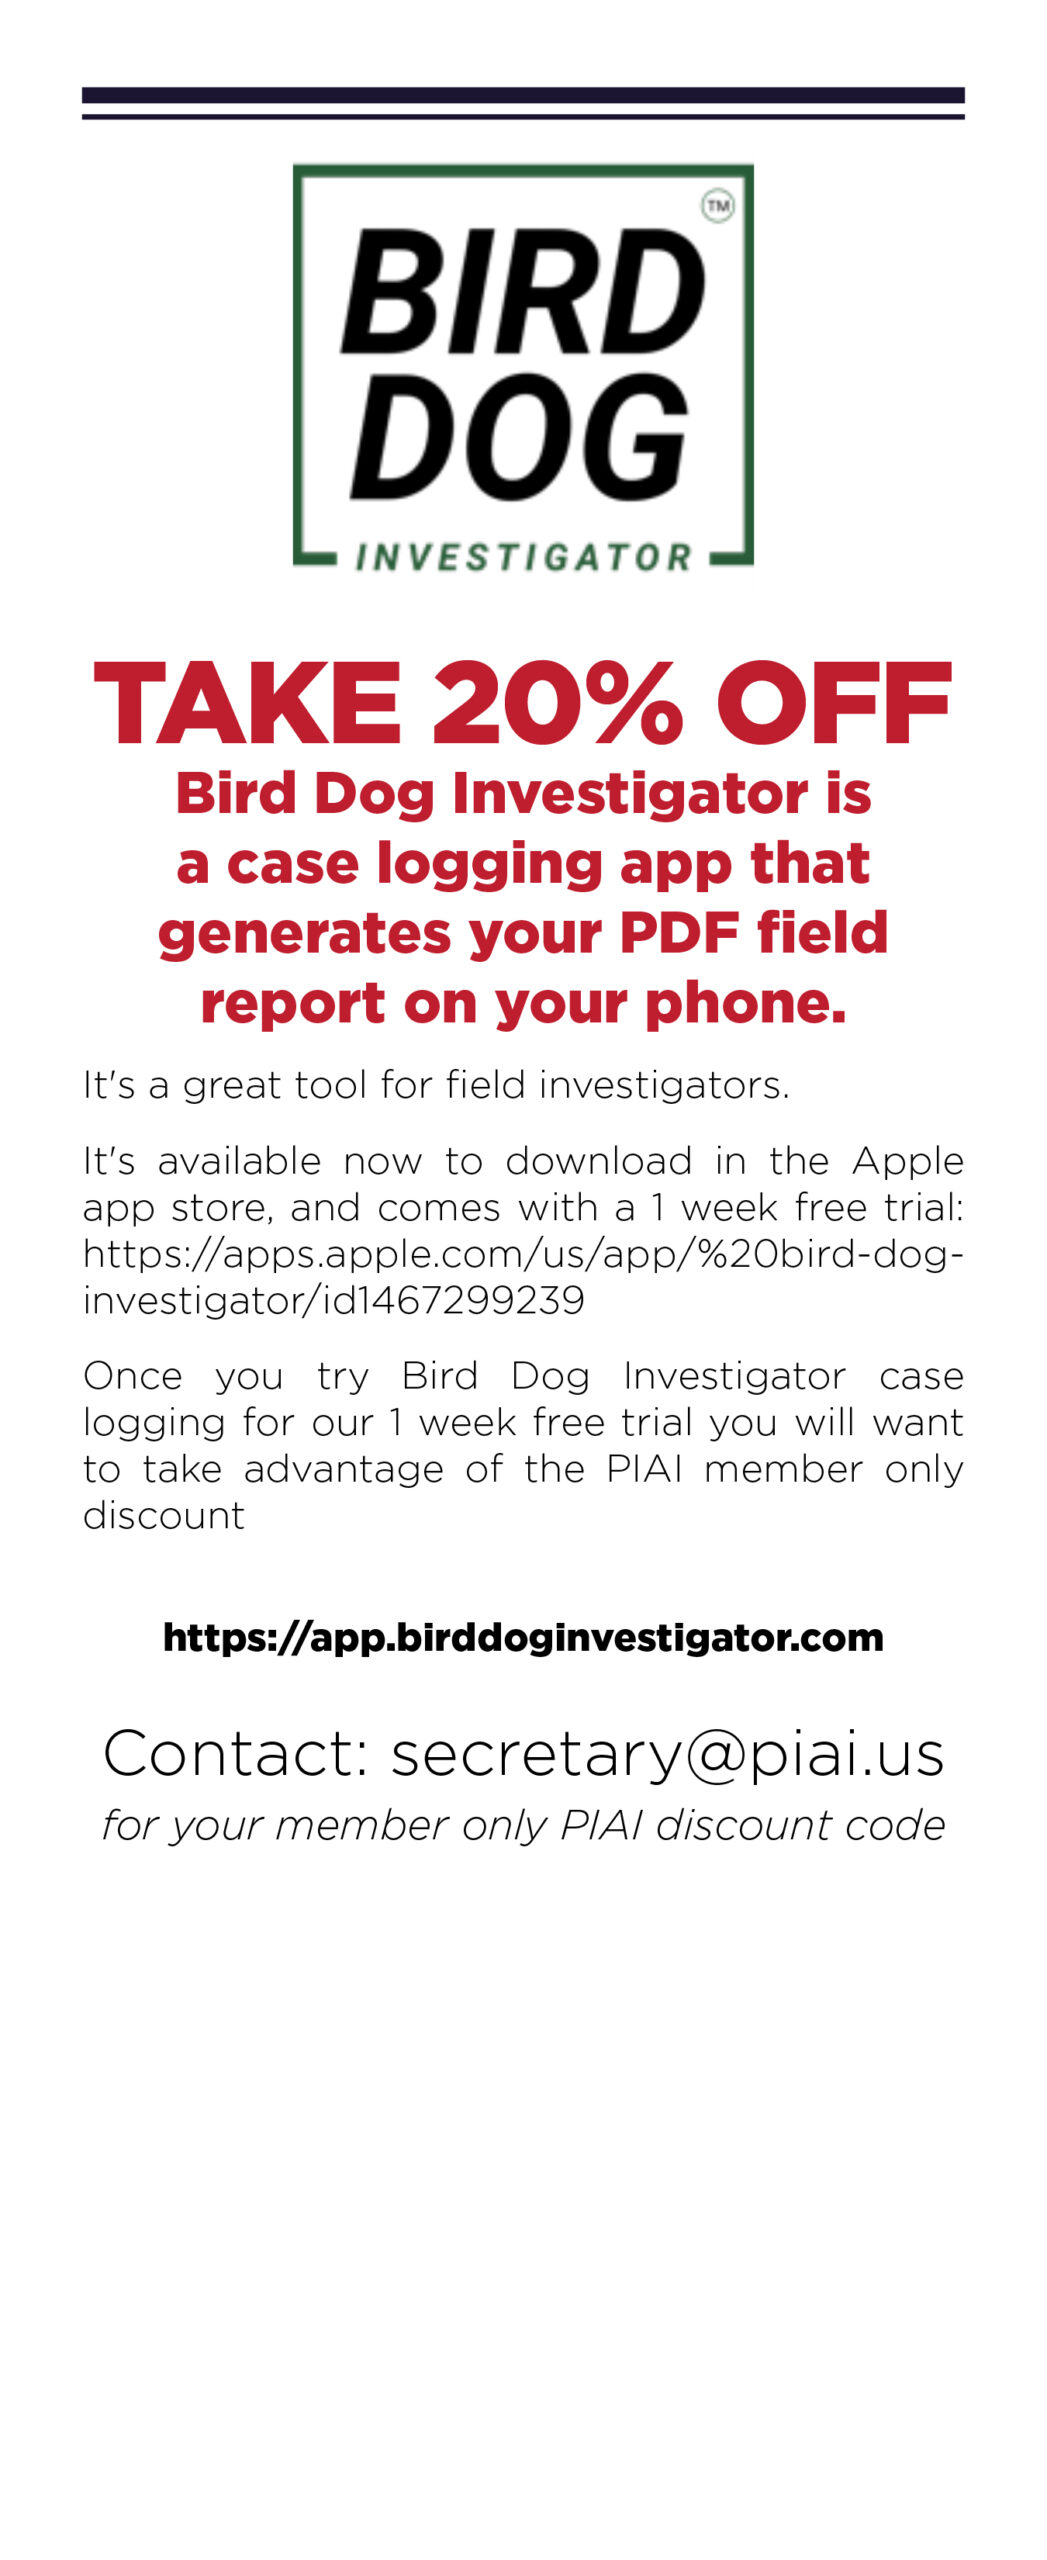 PIAI-Web-Ads-FALL-21-Bird-Dog